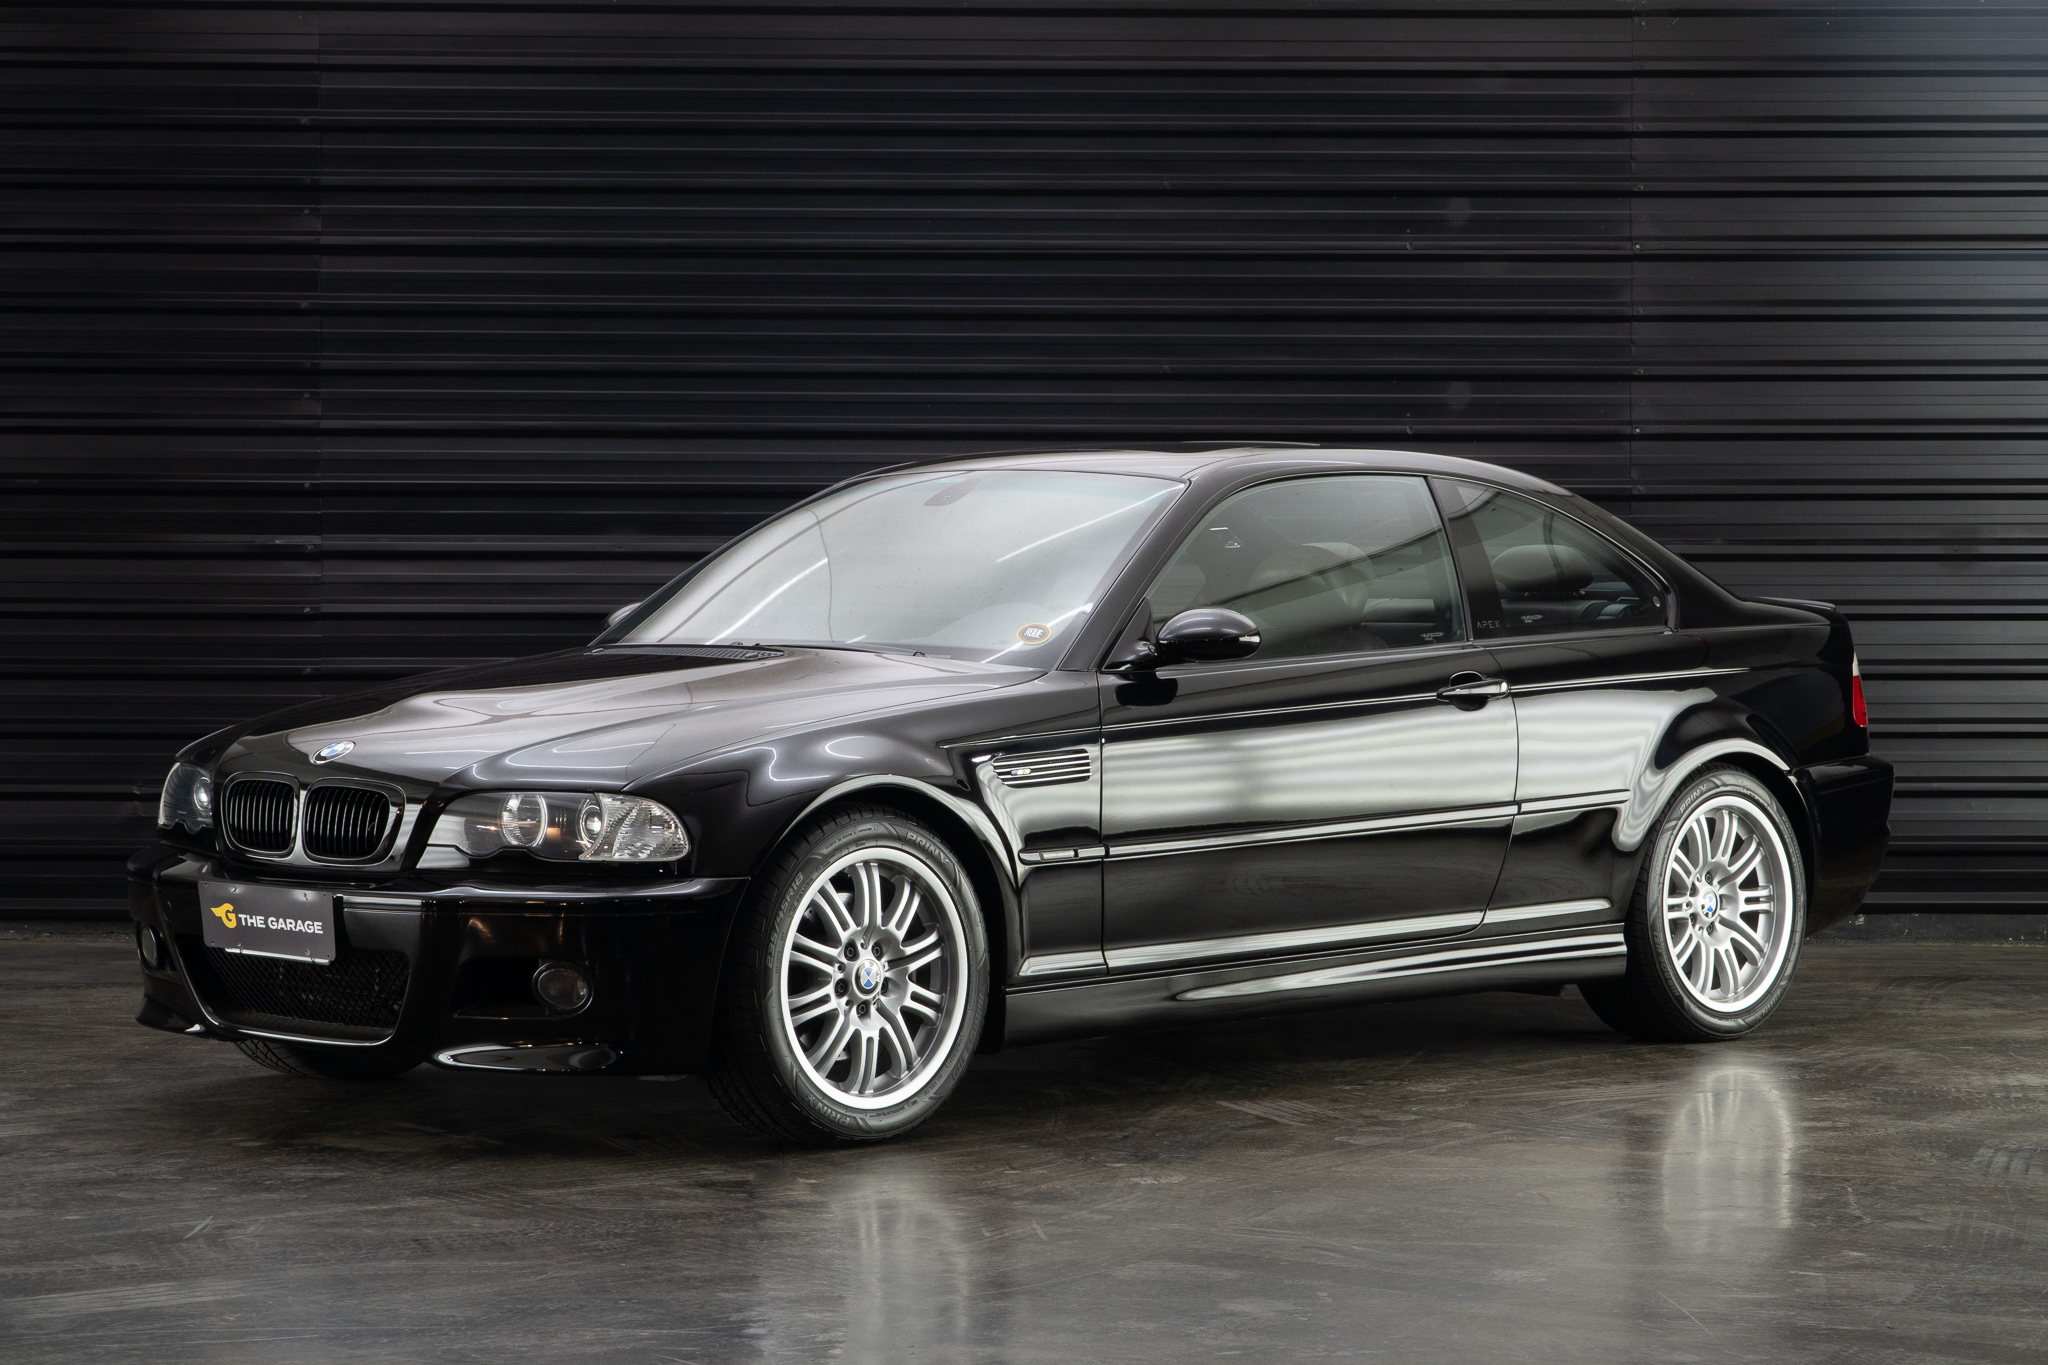 2002 BMW M3 - E46 a venda the garage for sale